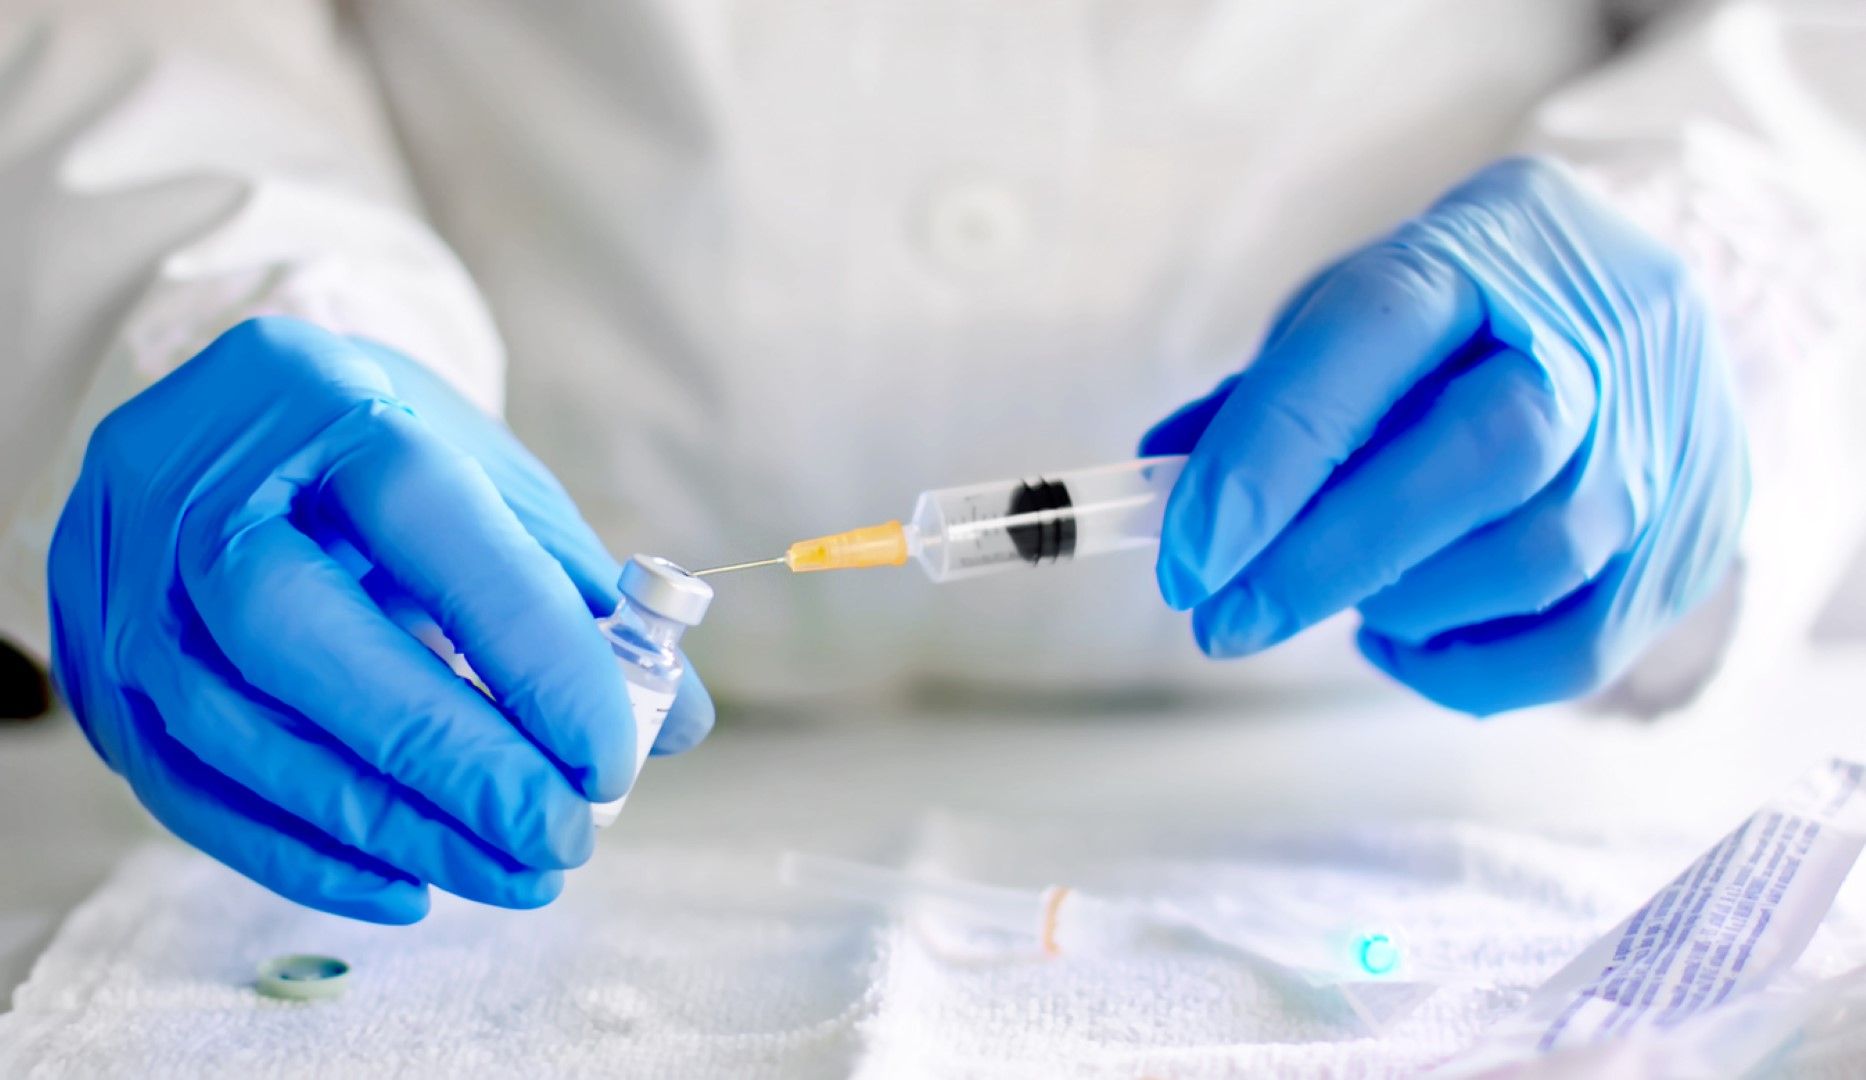 Около 100 са потенциалните ваксини, но те са на различен етап на производство и тестване. Само няколко производители вече провеждат клинични изпитания